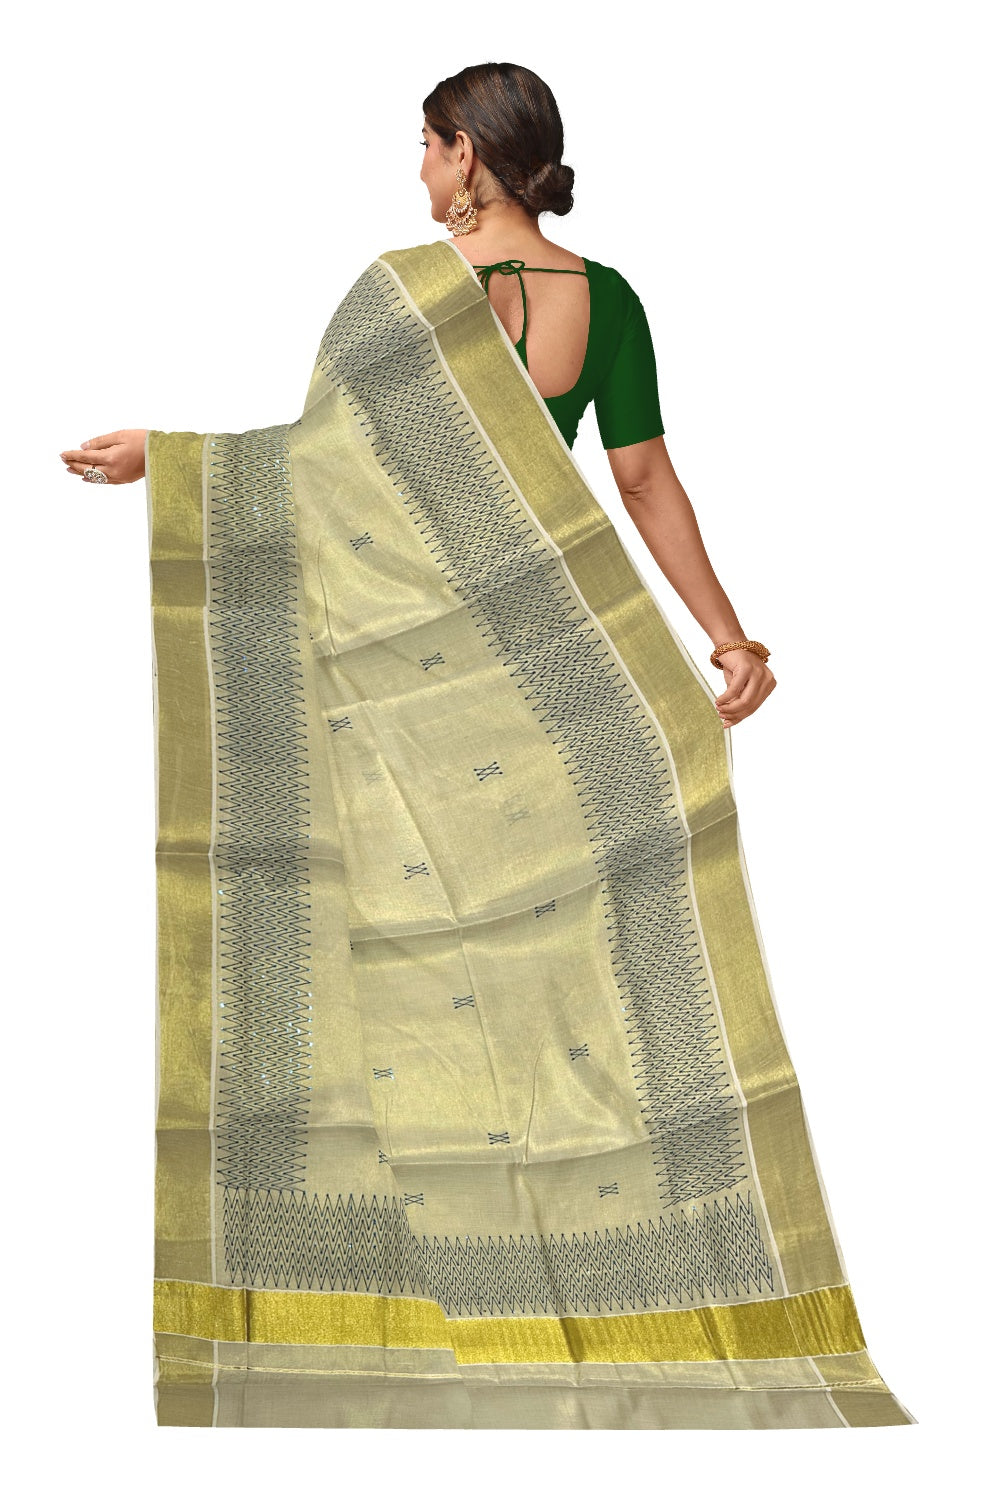 Kerala Tissue Kasavu Sequins Heavy Work Saree with Blue Thread Work Design